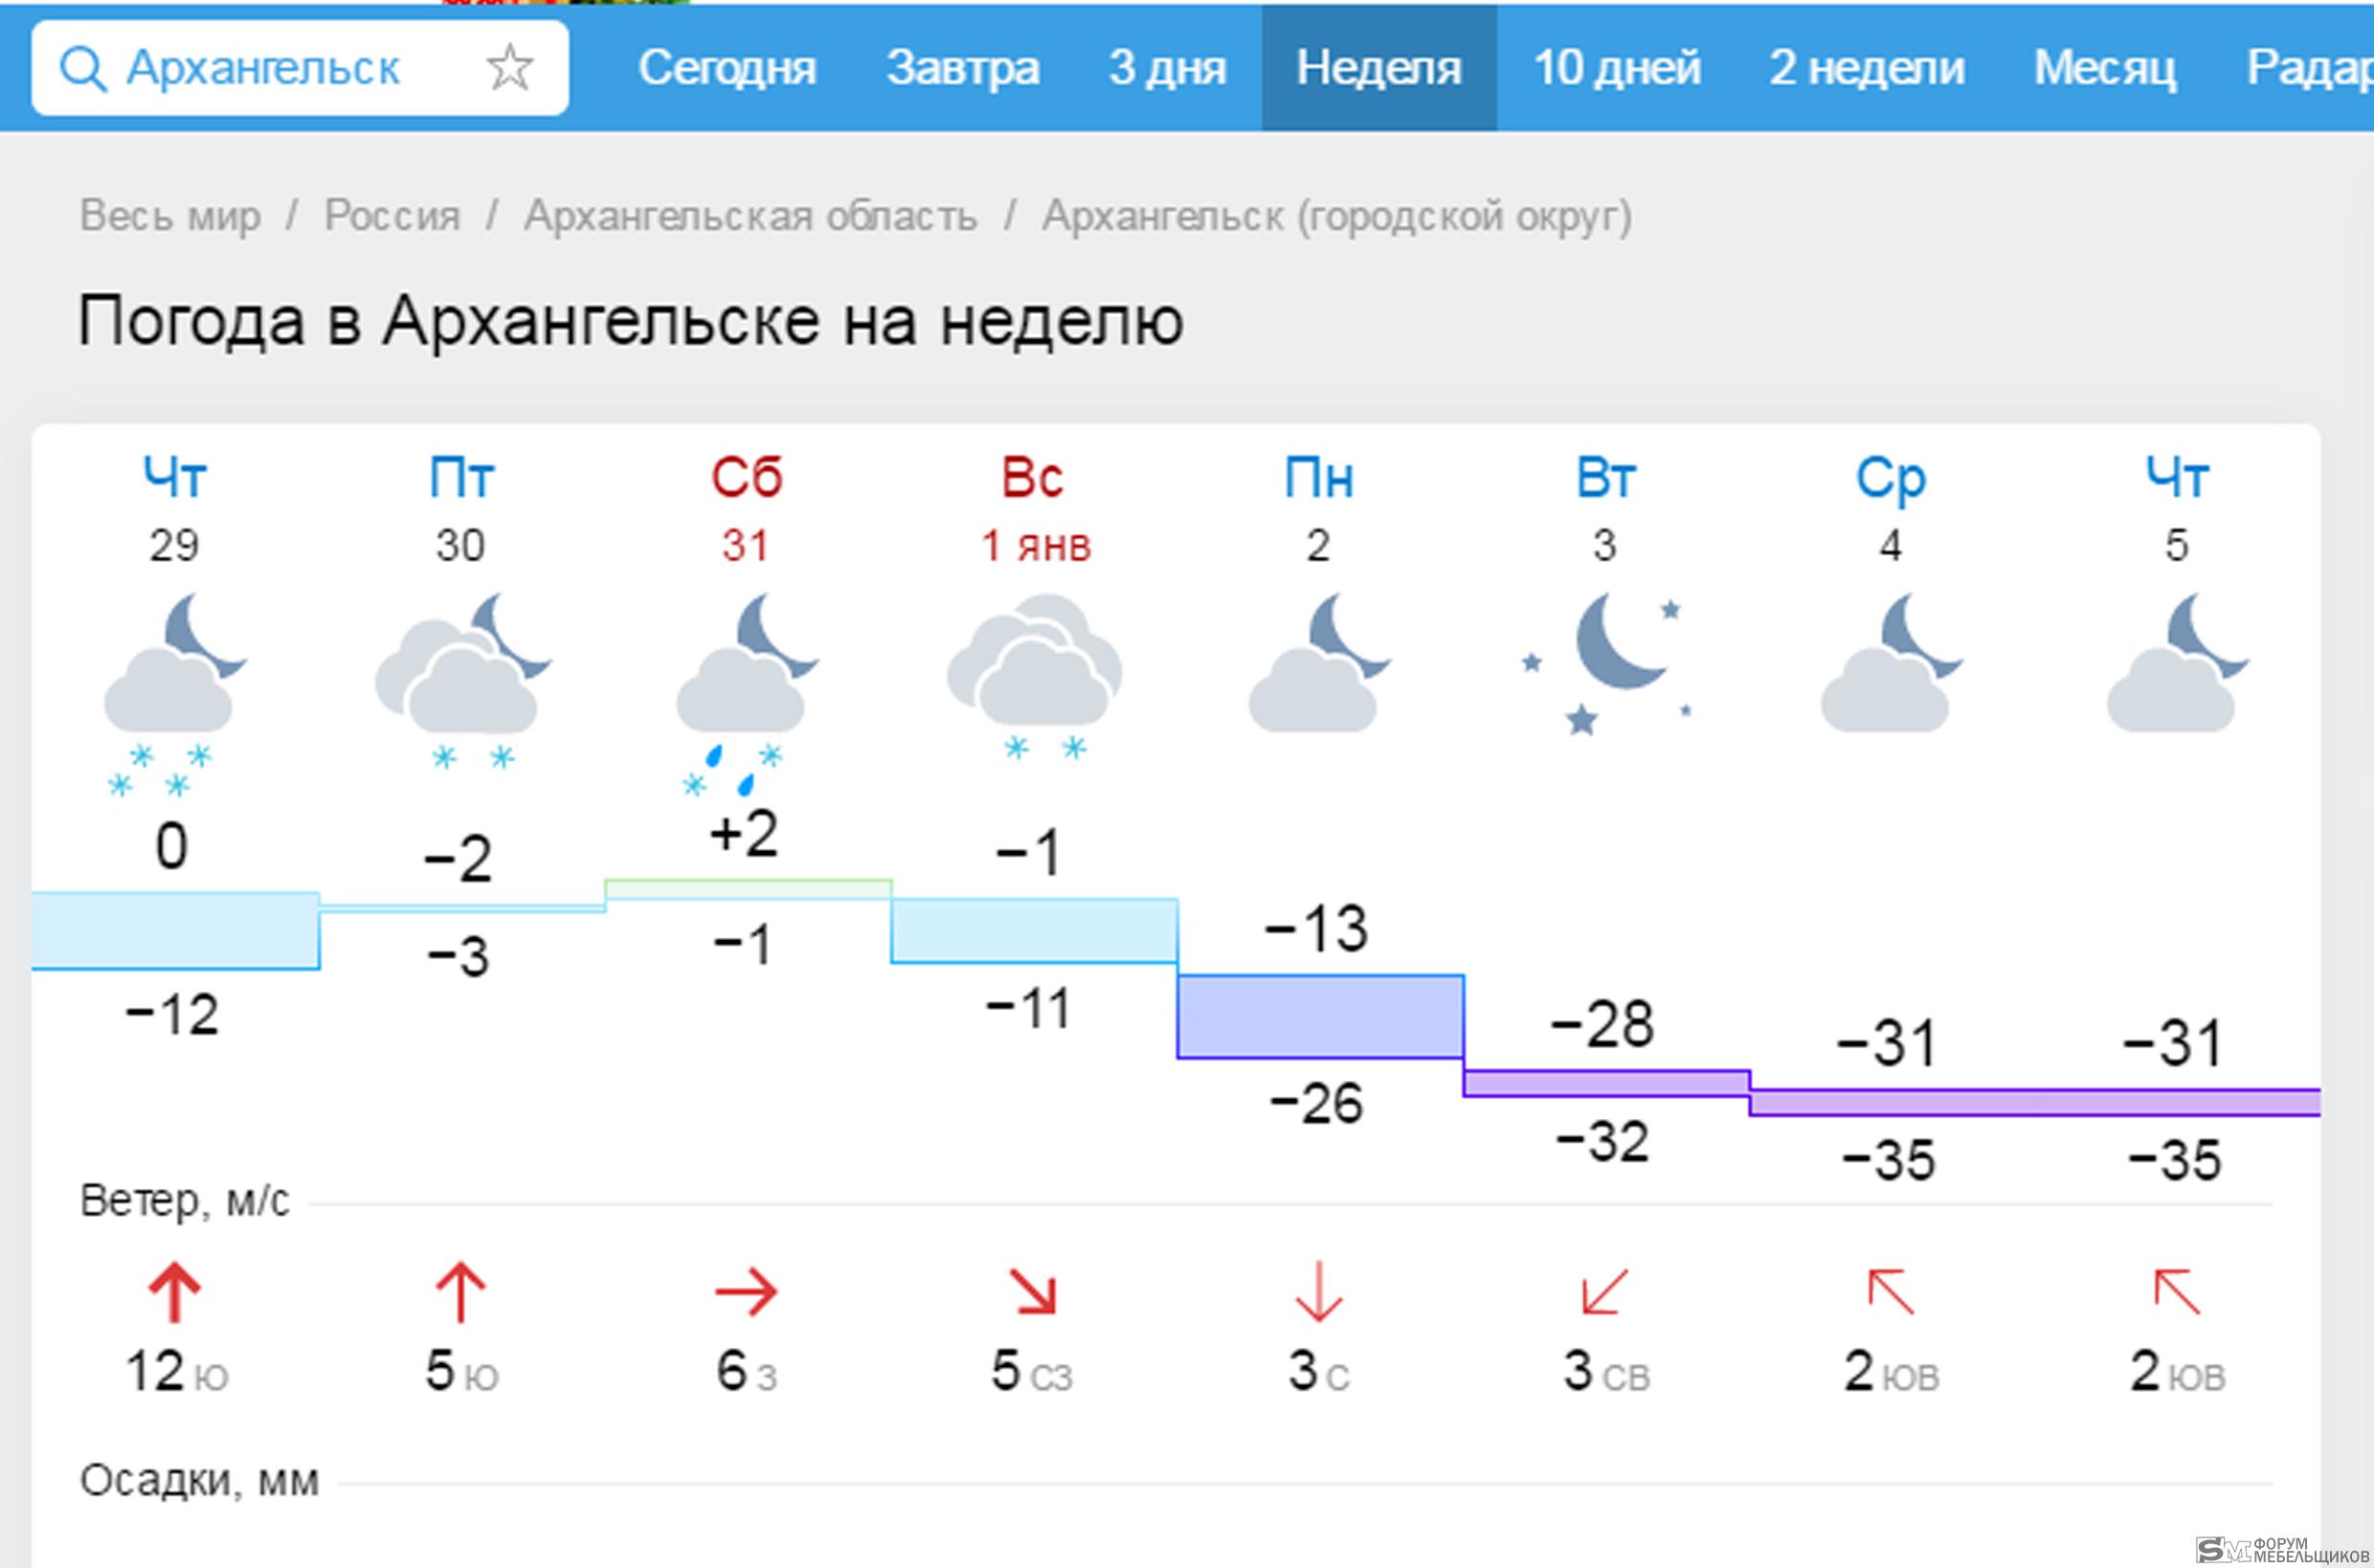 Гисметео мельниково. Погода в Архангельске на неделю. Погода в Архангельске на сегодня. Погода на завтра в Архангельске. Погода в Архангельске сейчас.